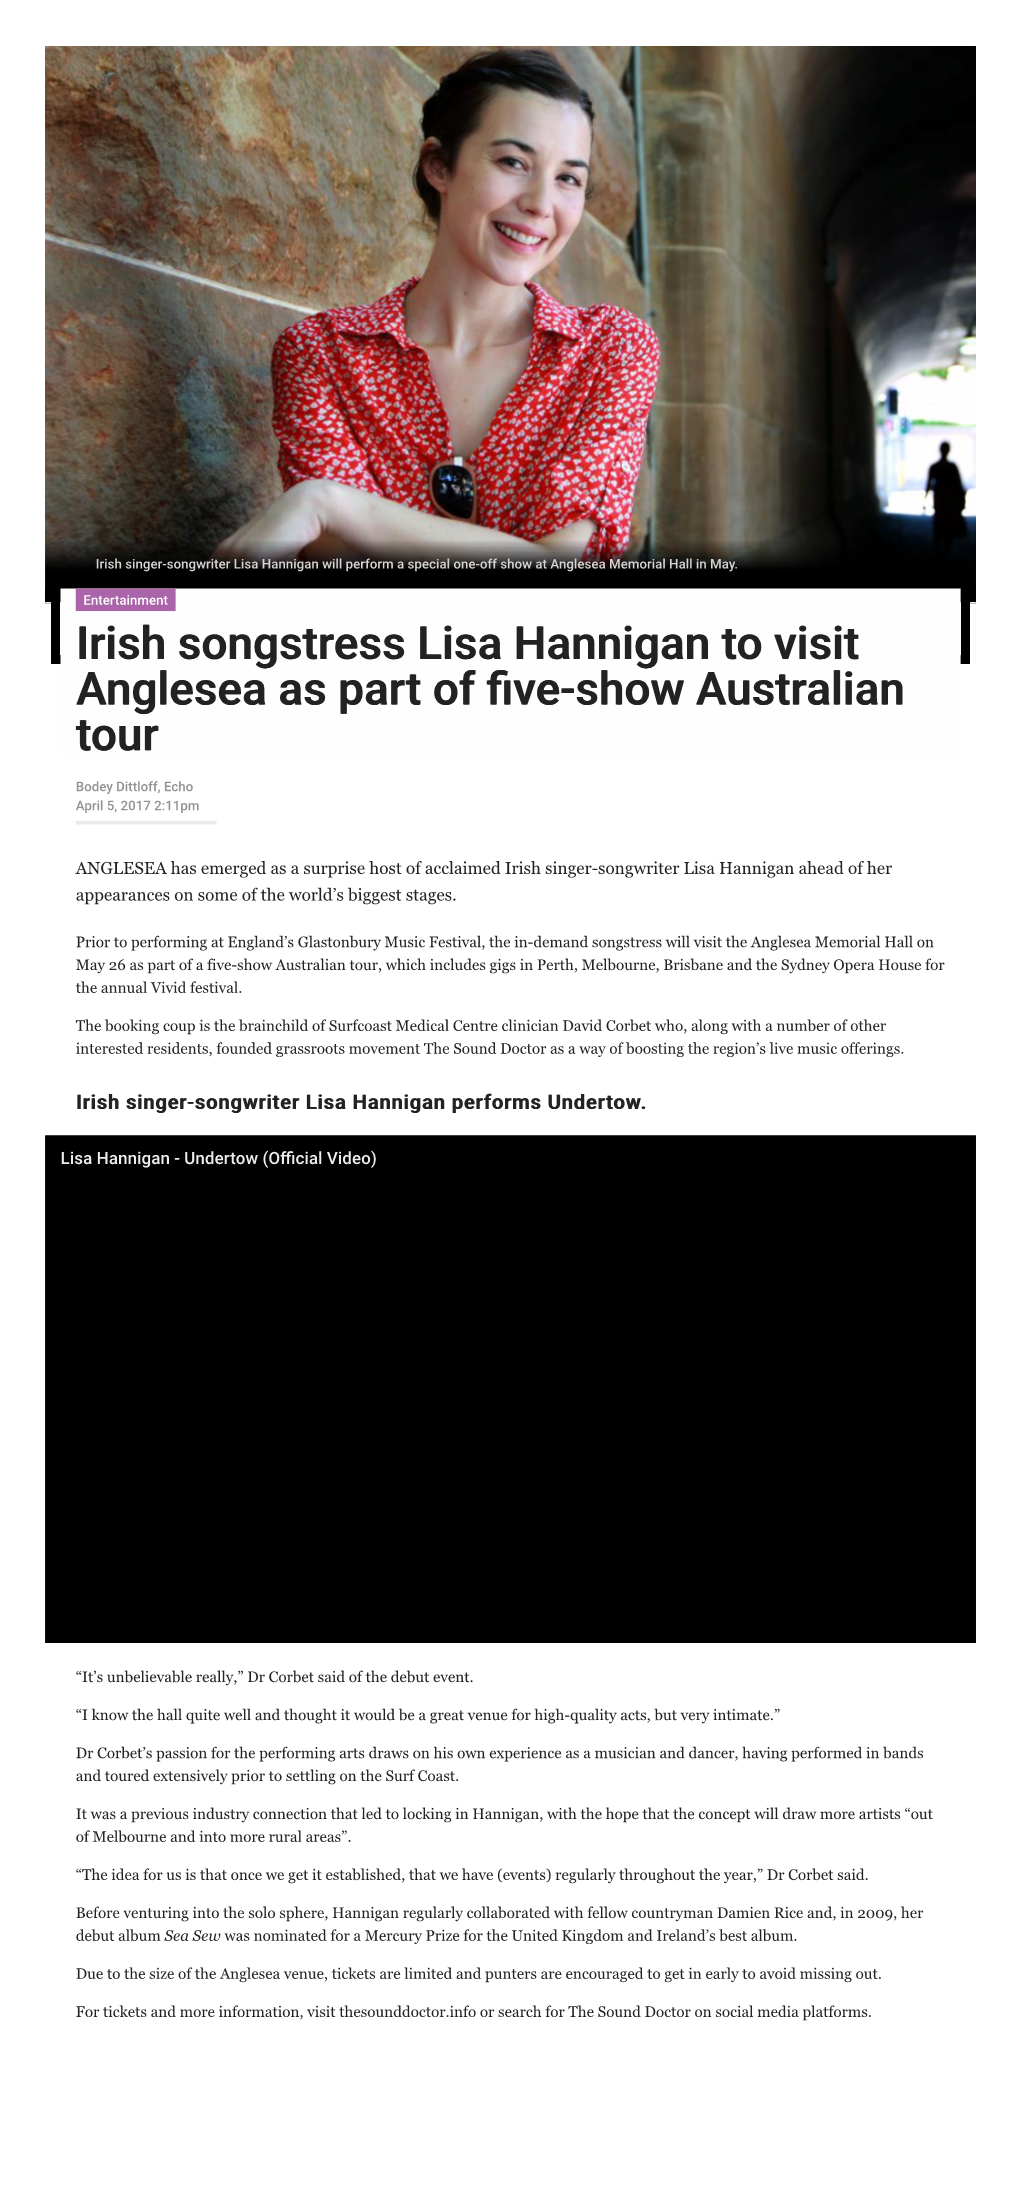 Irish Songstress Lisa Hannigan to Visit Irish Songstress Lisa Hannigan To